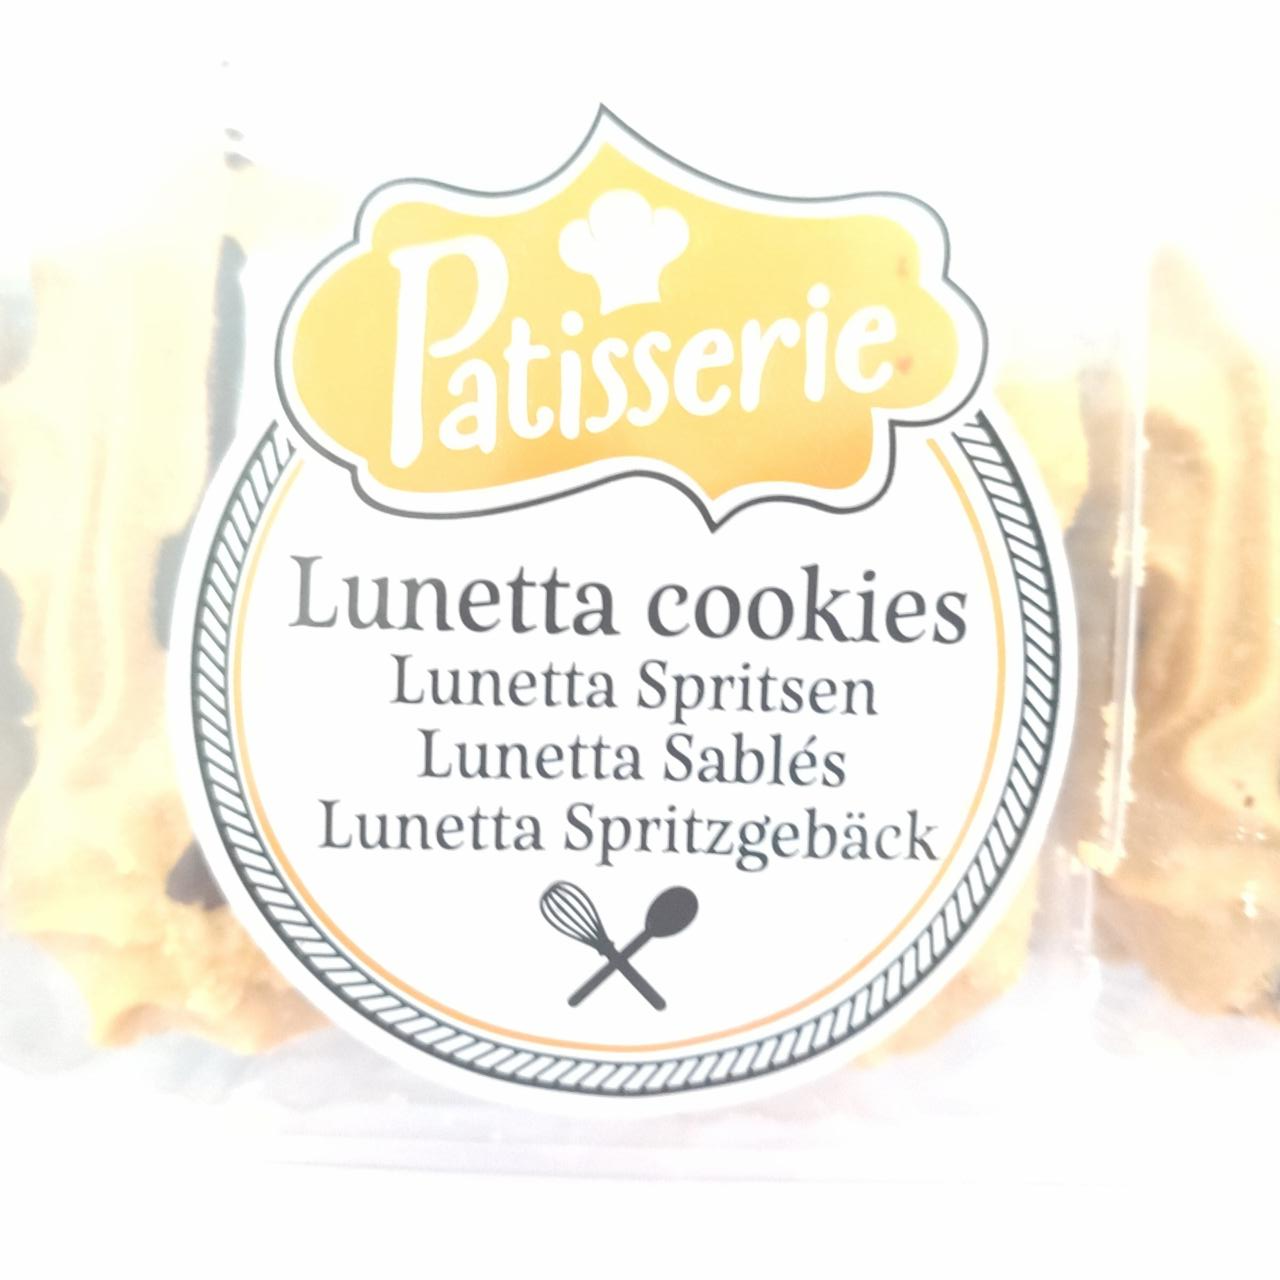 Fotografie - Lunetta cookies